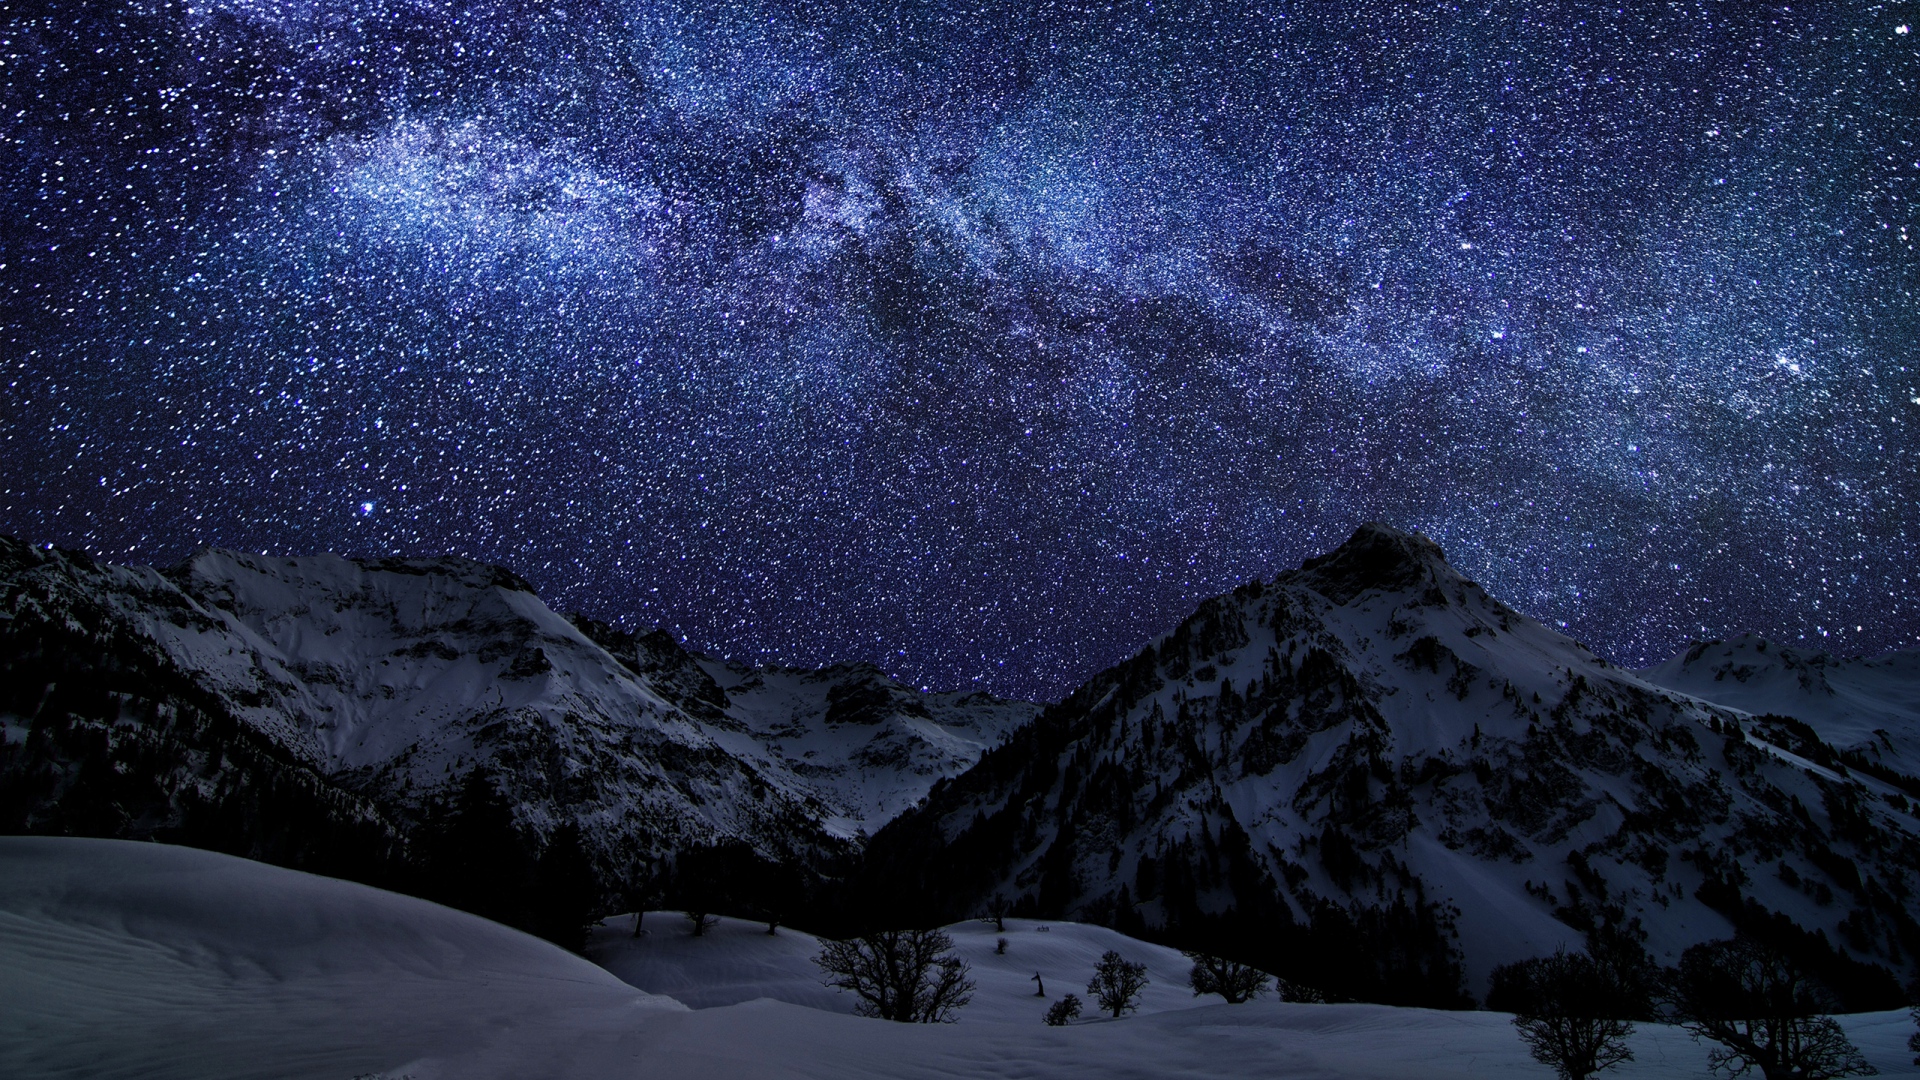 Download Wallpaper 1920x1080 winter sky stars nature night Full HD